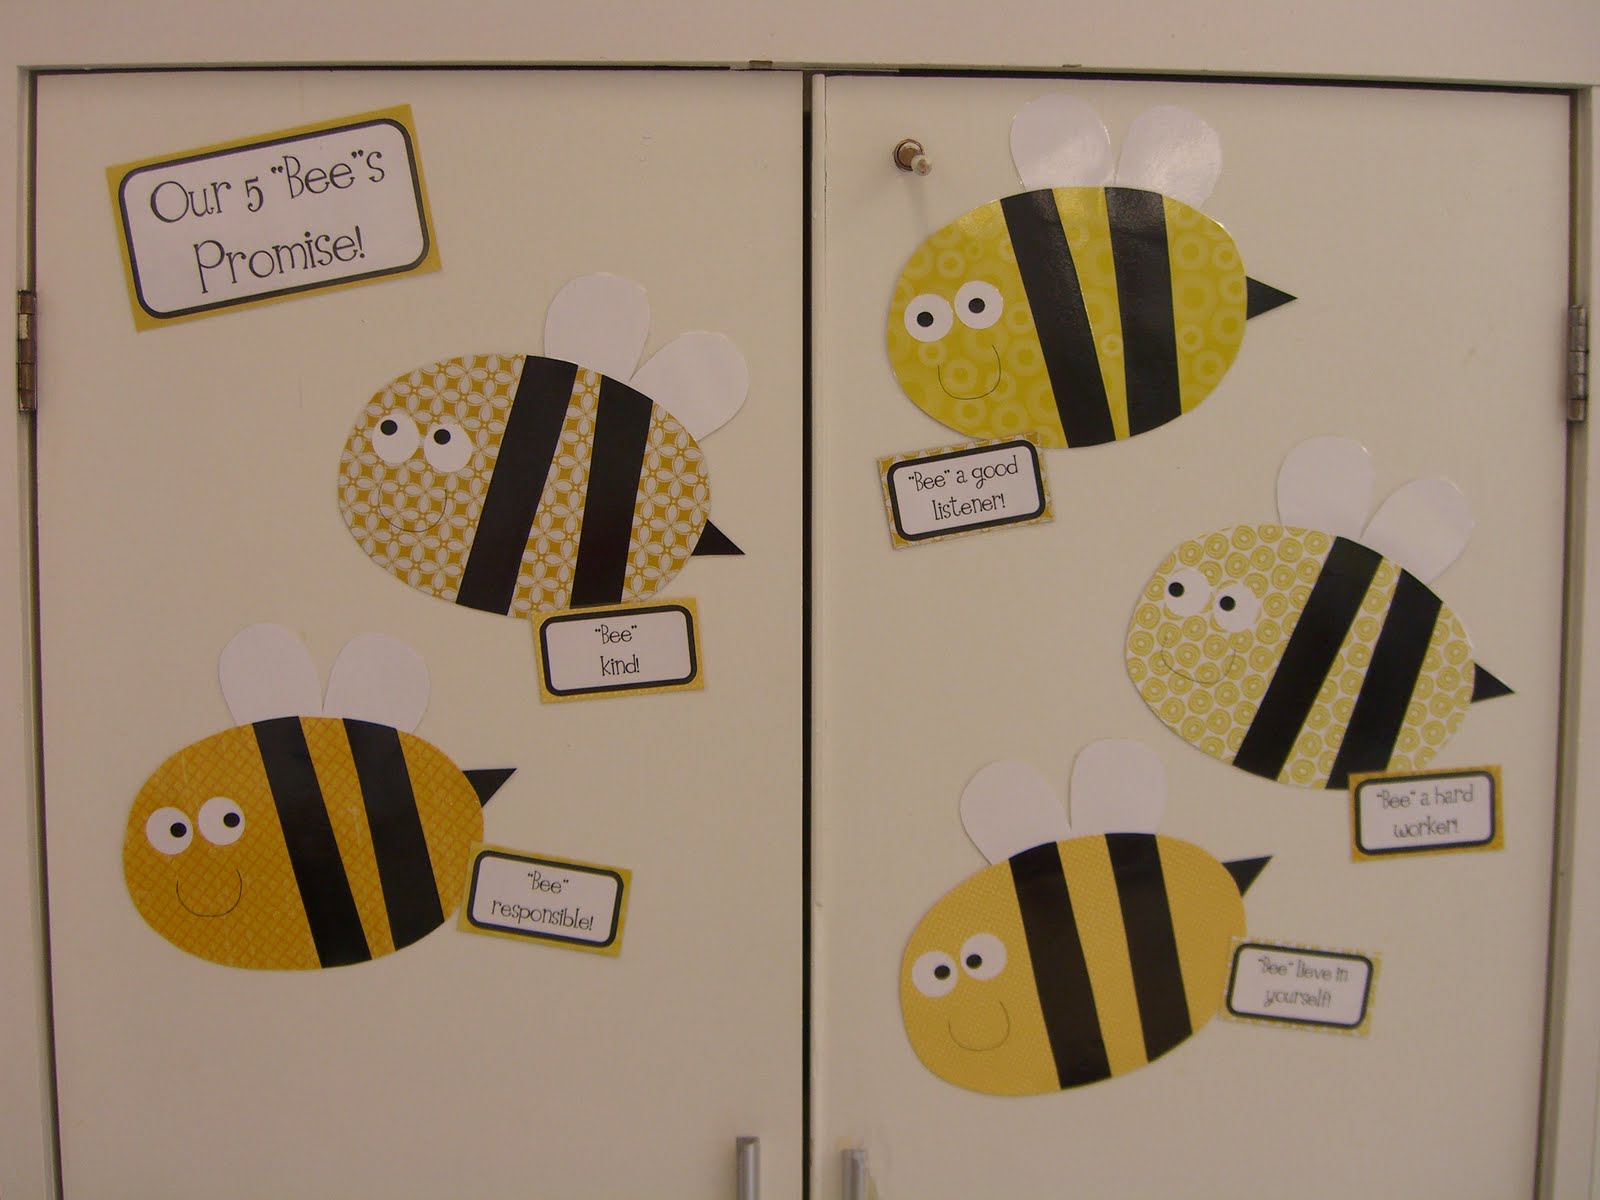 BEE Kind Bulletin Board, Honey Bee Decor